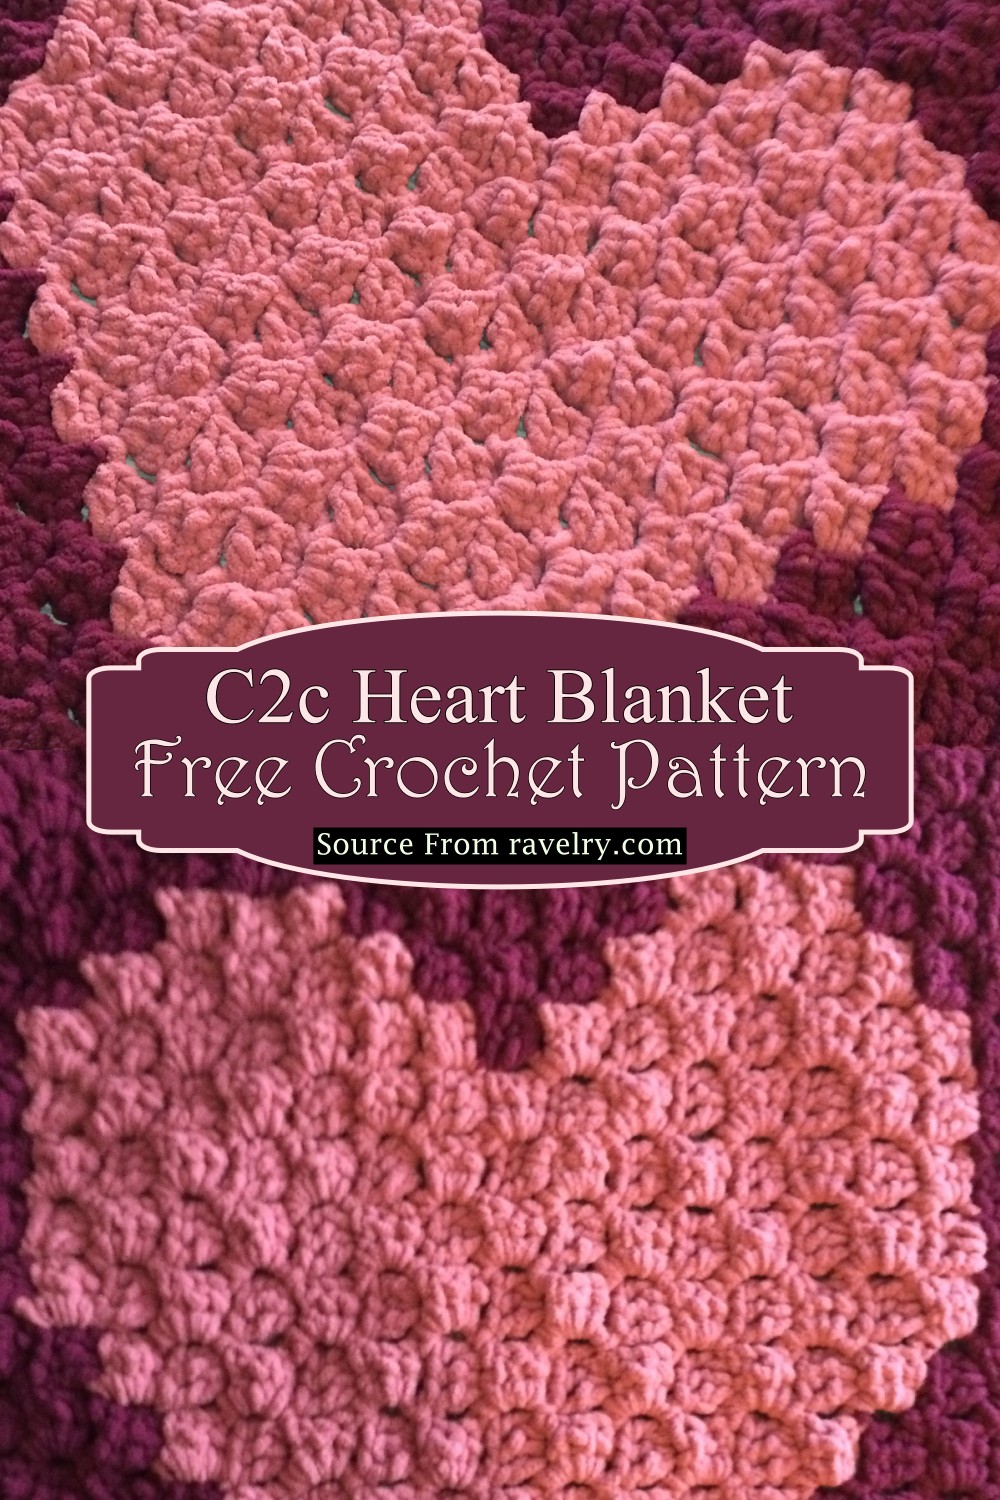 C2c Heart Blanket